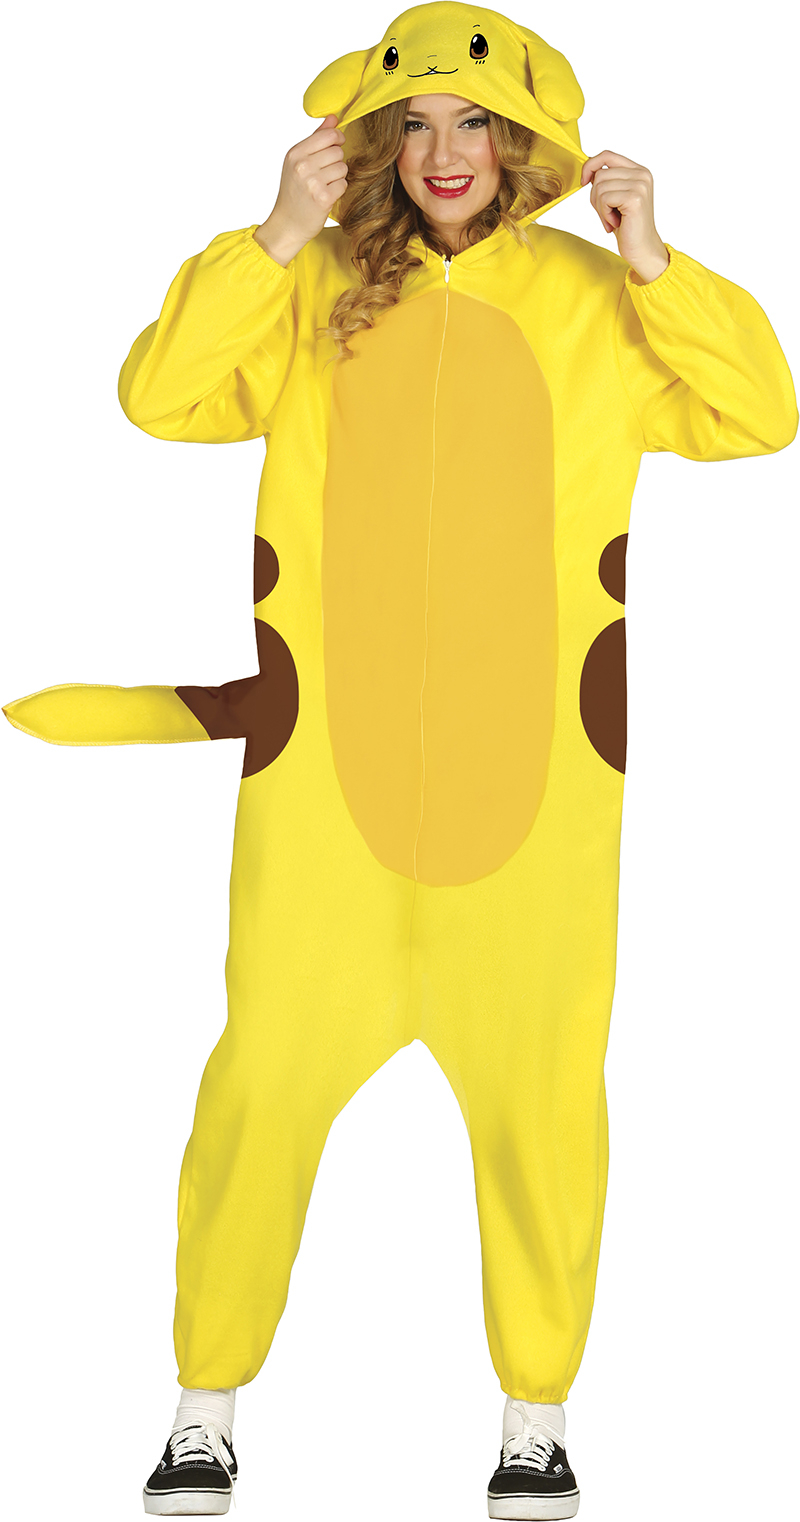 Pikachu Kostüm Méret - felnőtt: M